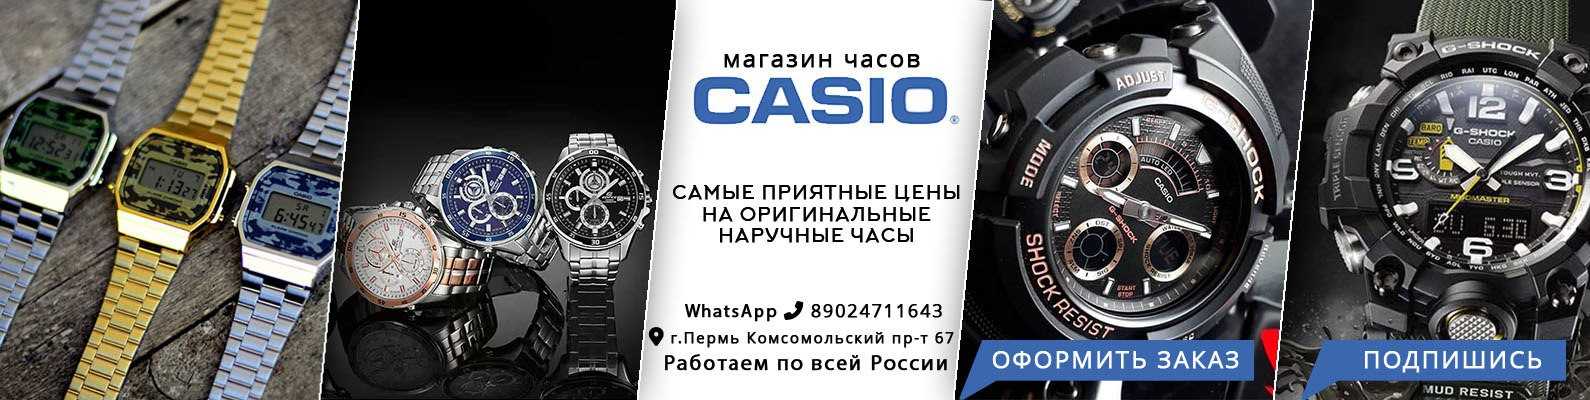 Мужские часы casio (50 фото): выбираем электронные золотые часы и спортивные модели. g-shock и edifice, другие линейки наручных часов. отзывы